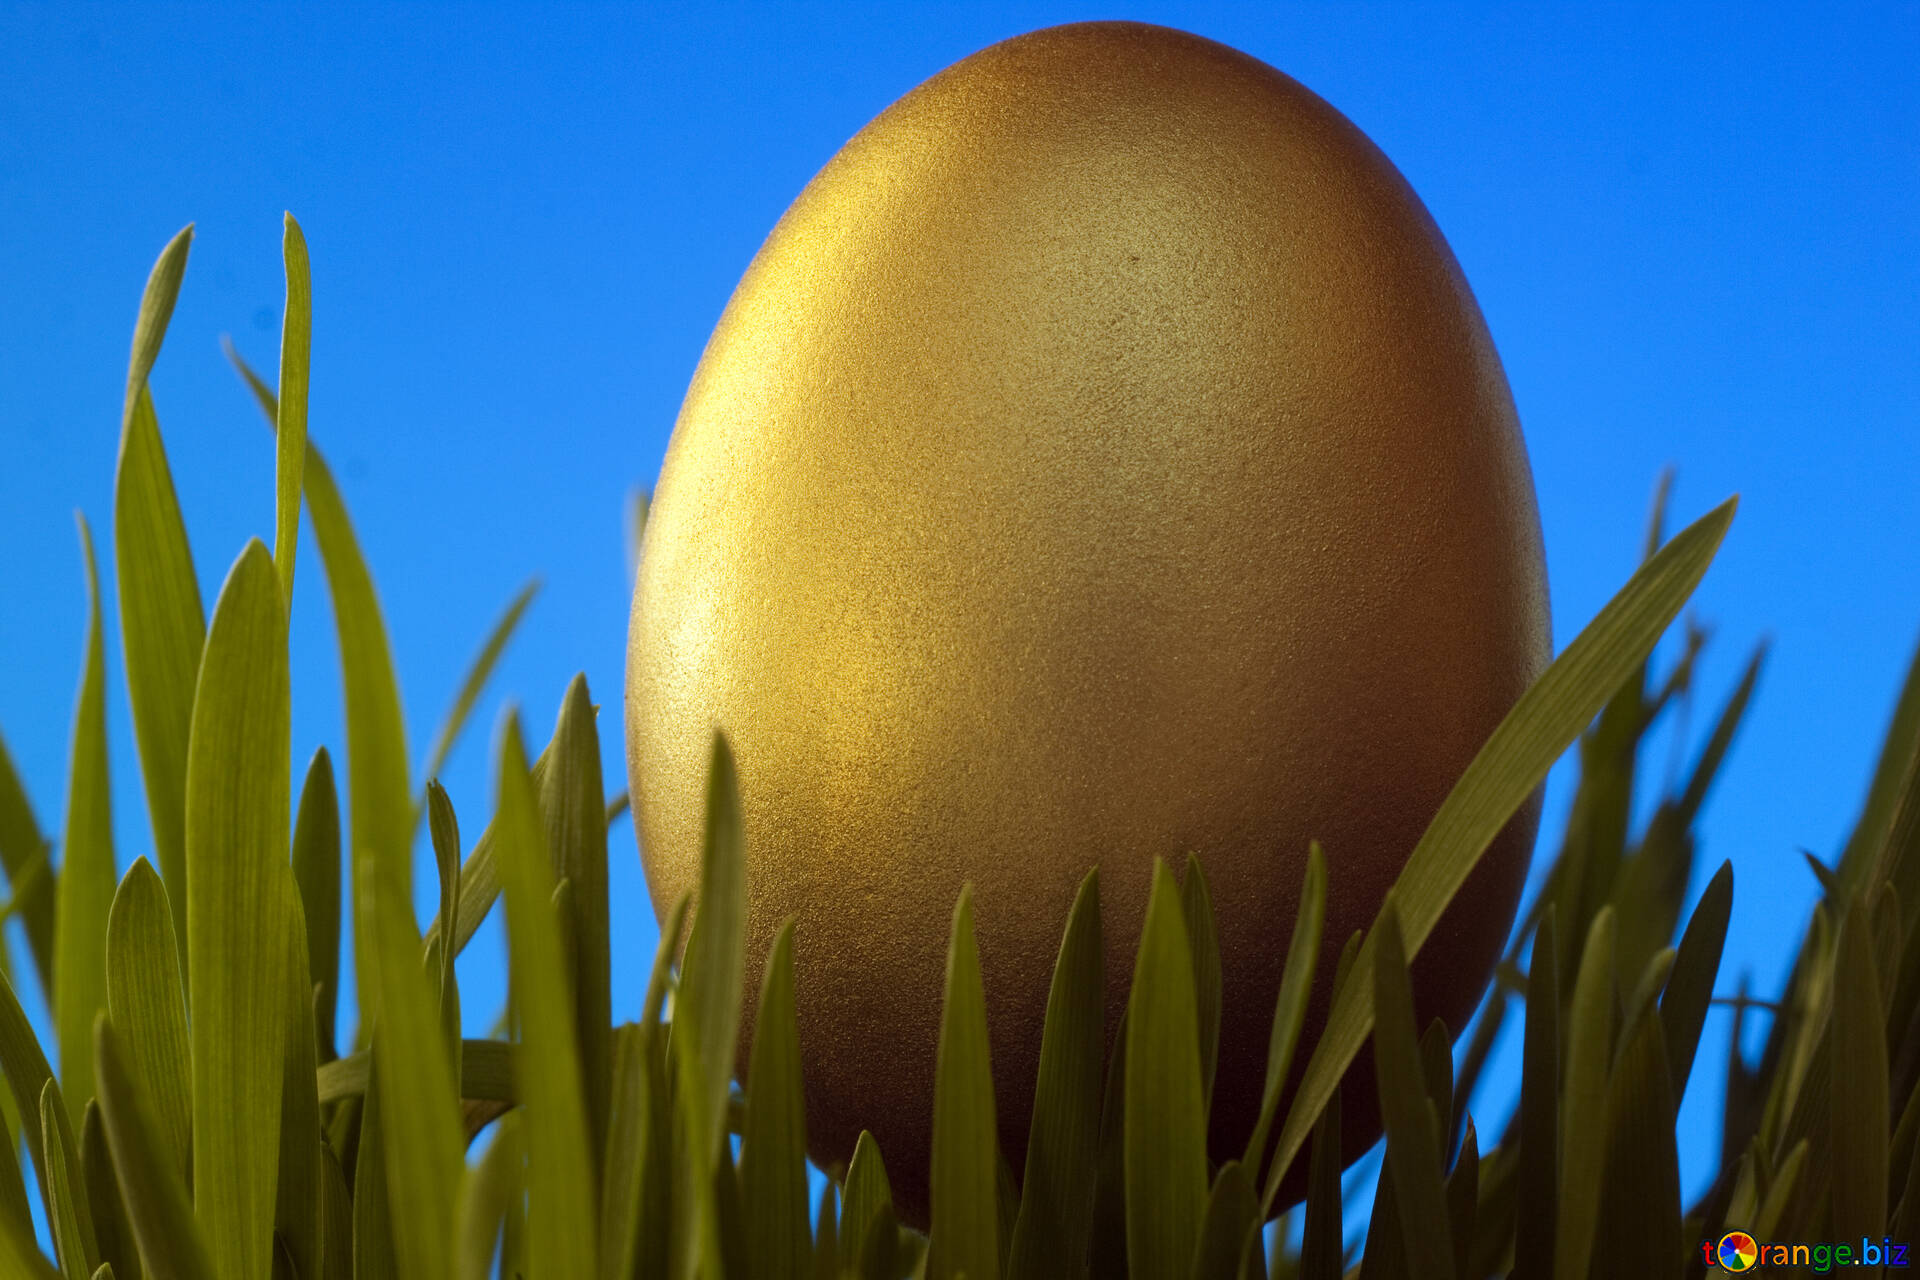 Viens retrouver l’œuf d'or le samedi 30 avril sur Saint-Evarzec